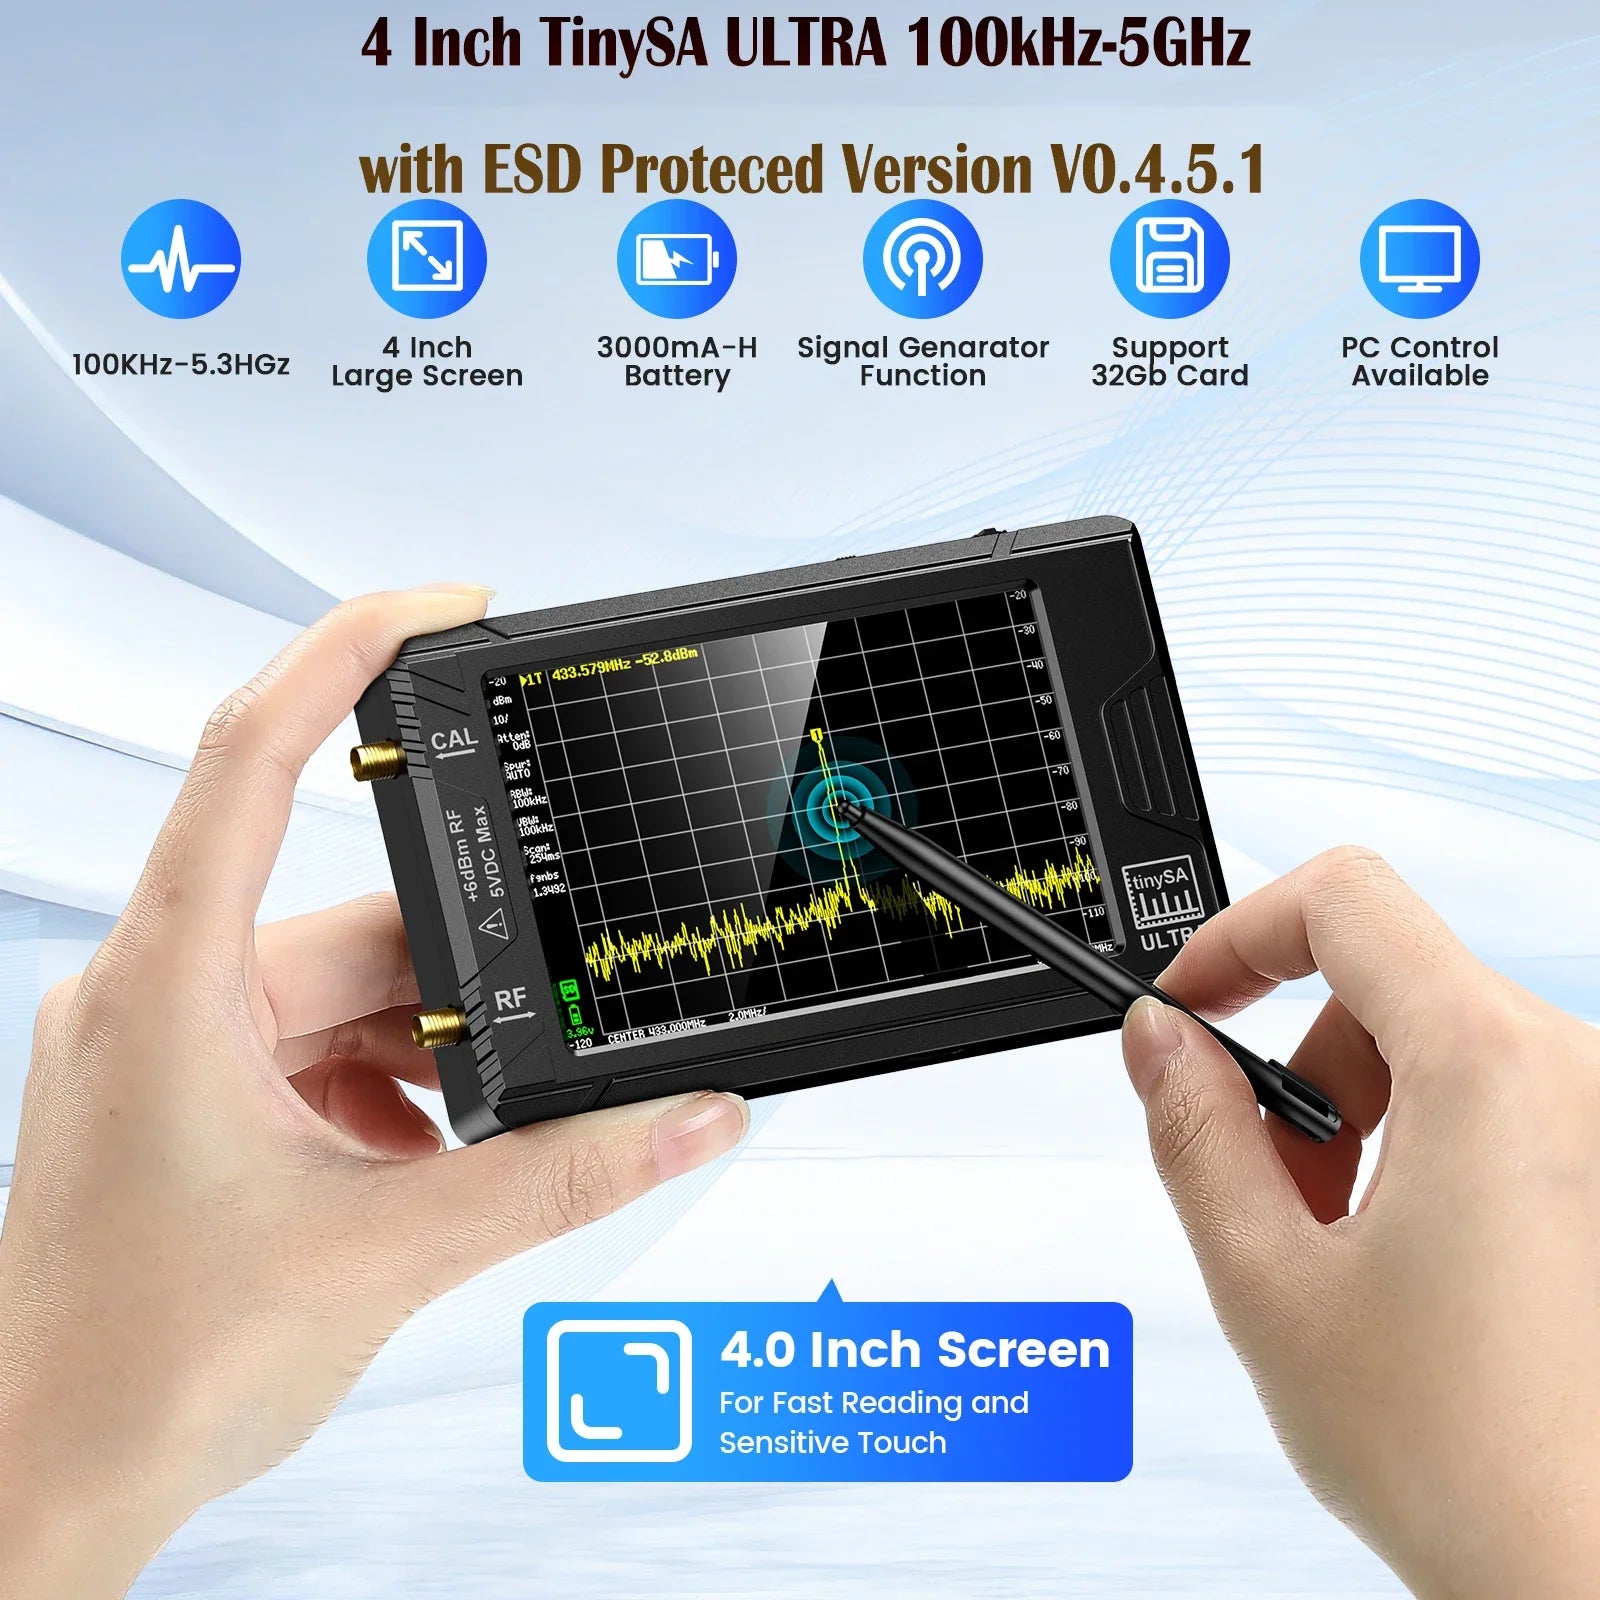 Handheld Spectrum Analyzer, 28 Display, 100kHz to 53GHz Coverage